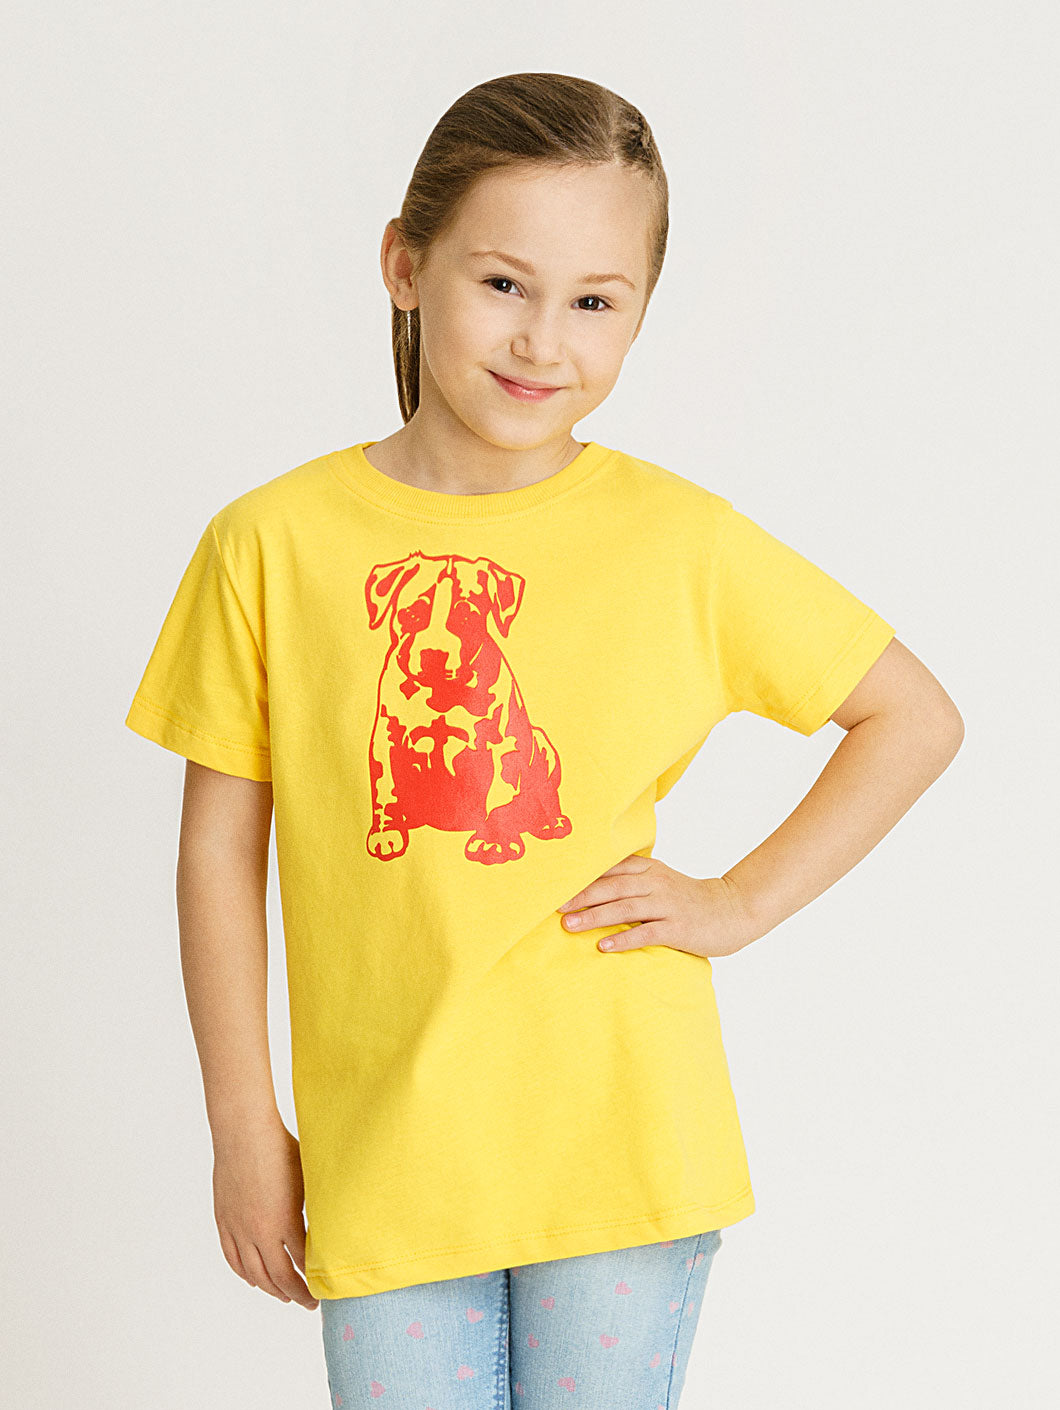 Babystaff Kids Logo T-Shirt gelb - 9